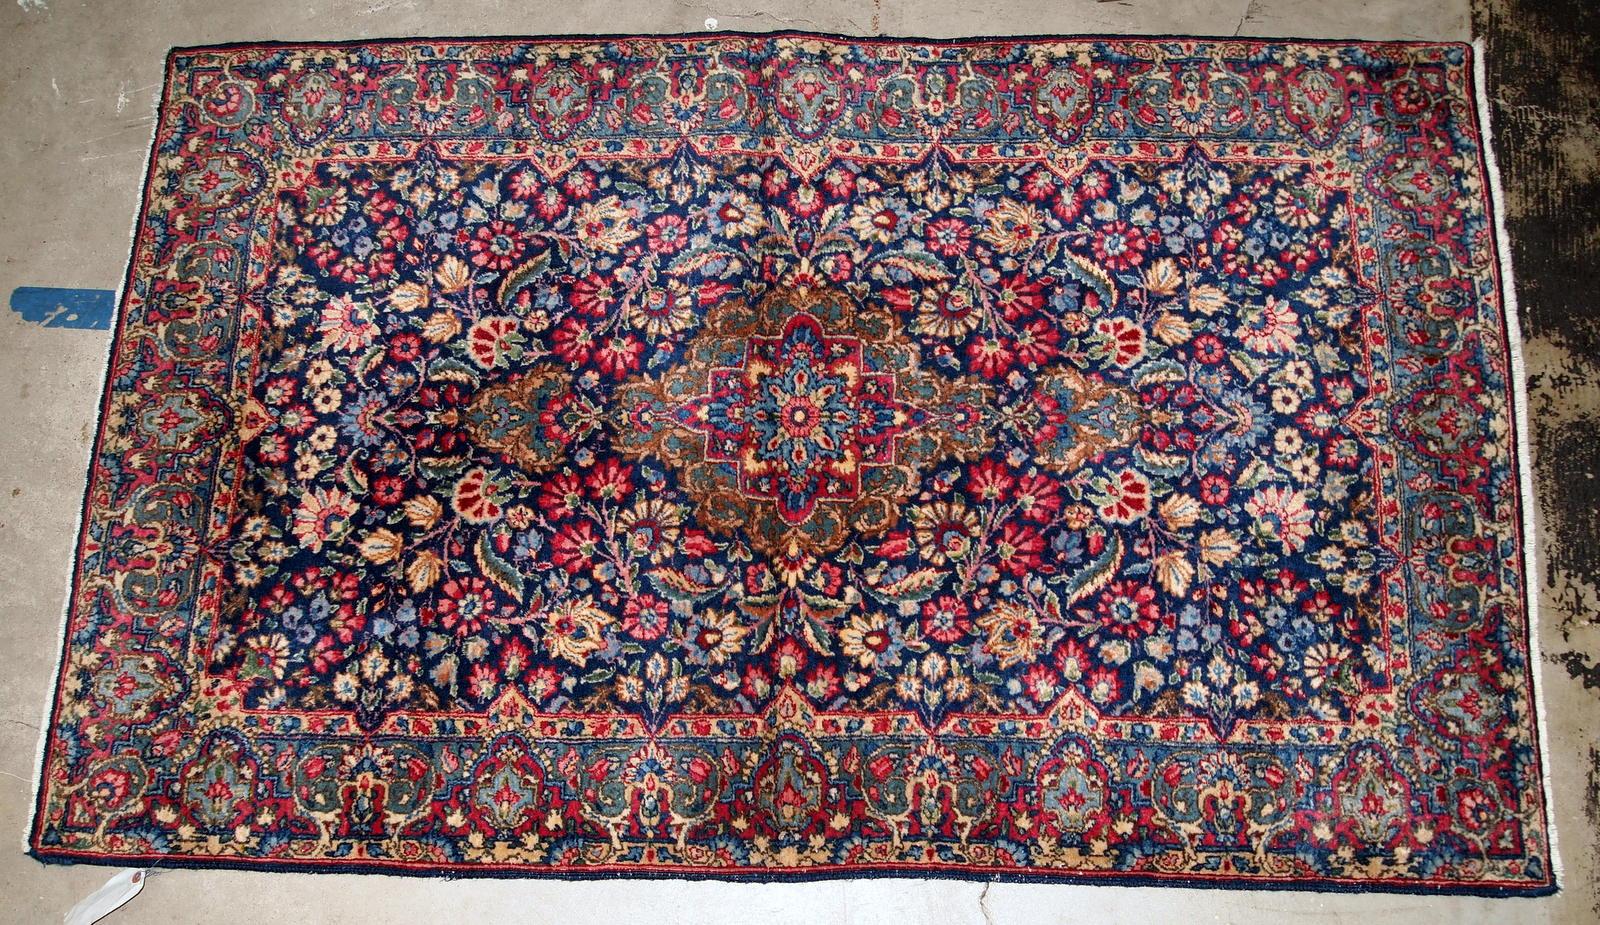 Handgefertigter antiker Kerman-Teppich vom Anfang des 20. Jahrhunderts. Der Teppich befindet sich in einem guten Originalzustand und ist in bunten Farbtönen und mit einem floralen Muster versehen.

-zustand: original gut,

-ca. 1920er